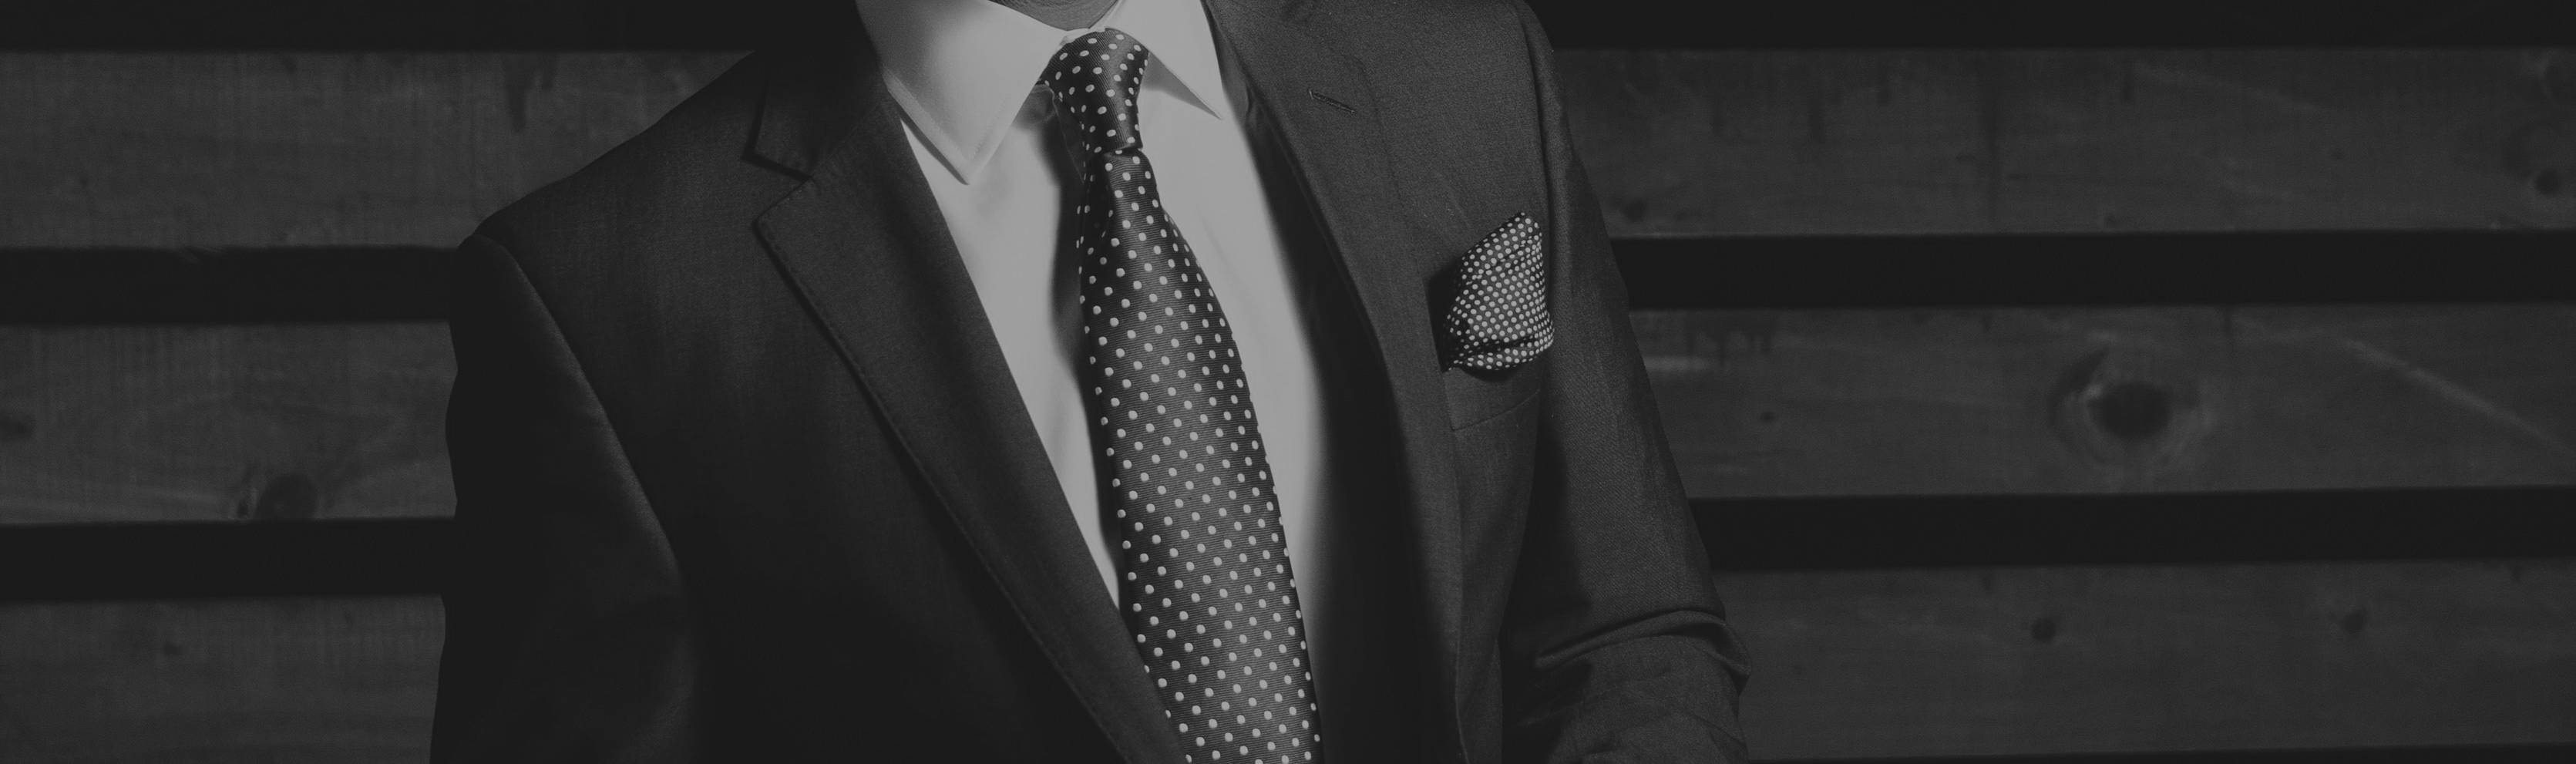 business-suit-6900xxxxx48